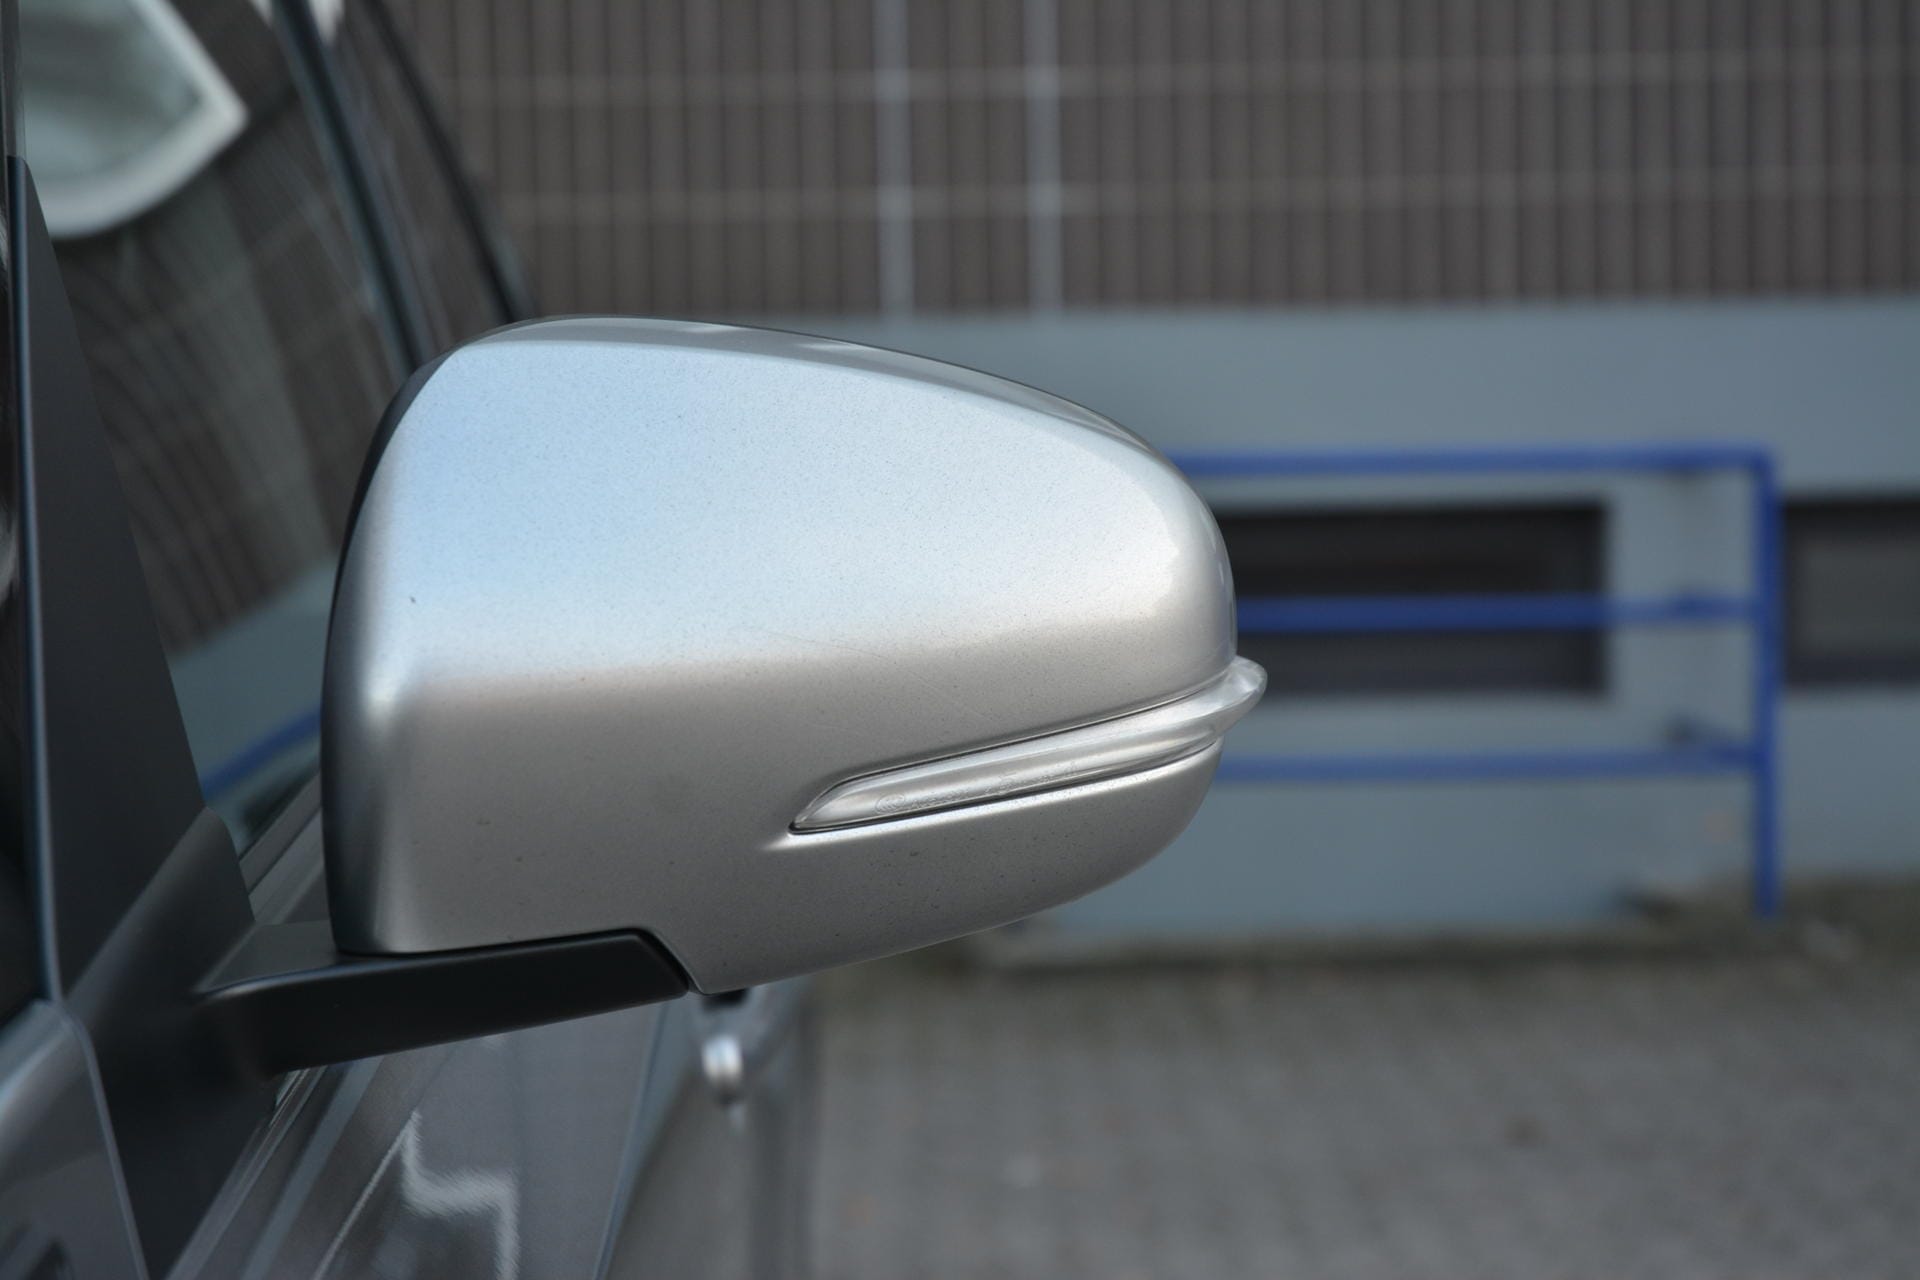 Gar nicht blass kommt der Suzuki Vitara rüber - hier die in Wagenfarbe lackierten Außenspiegelgehäuse.